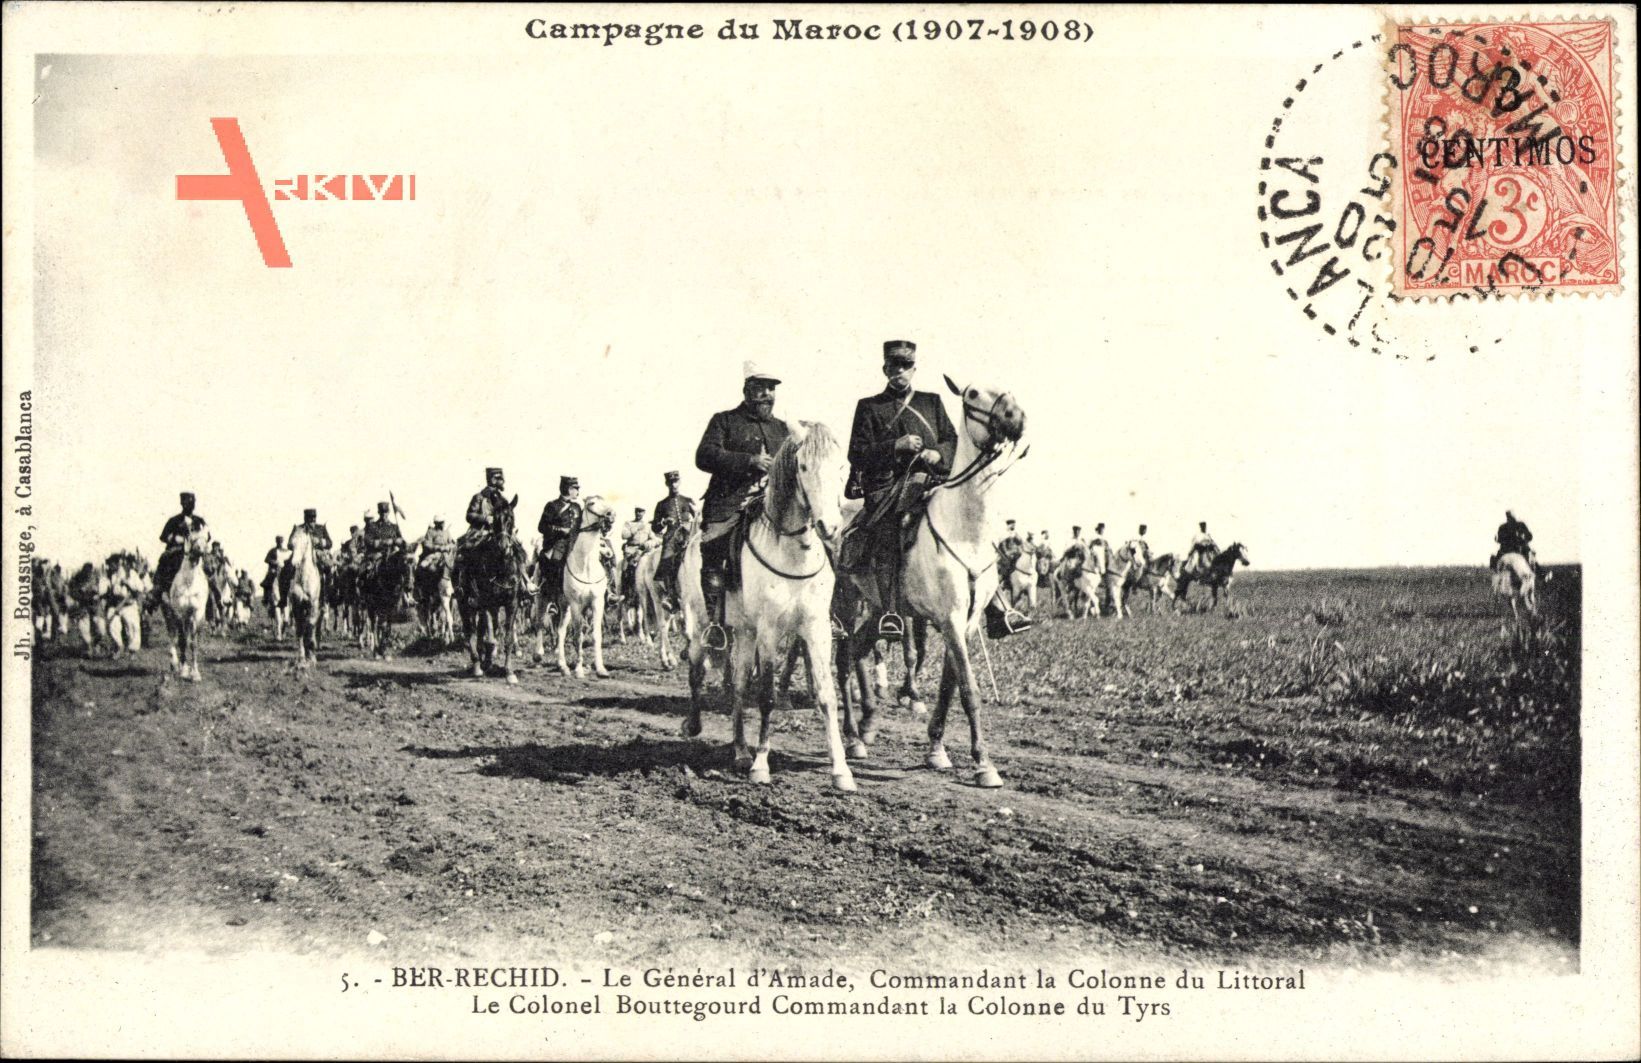 Ber Rechid Marokko, Le Général dAmade, Commandant la Colonne du Littoral